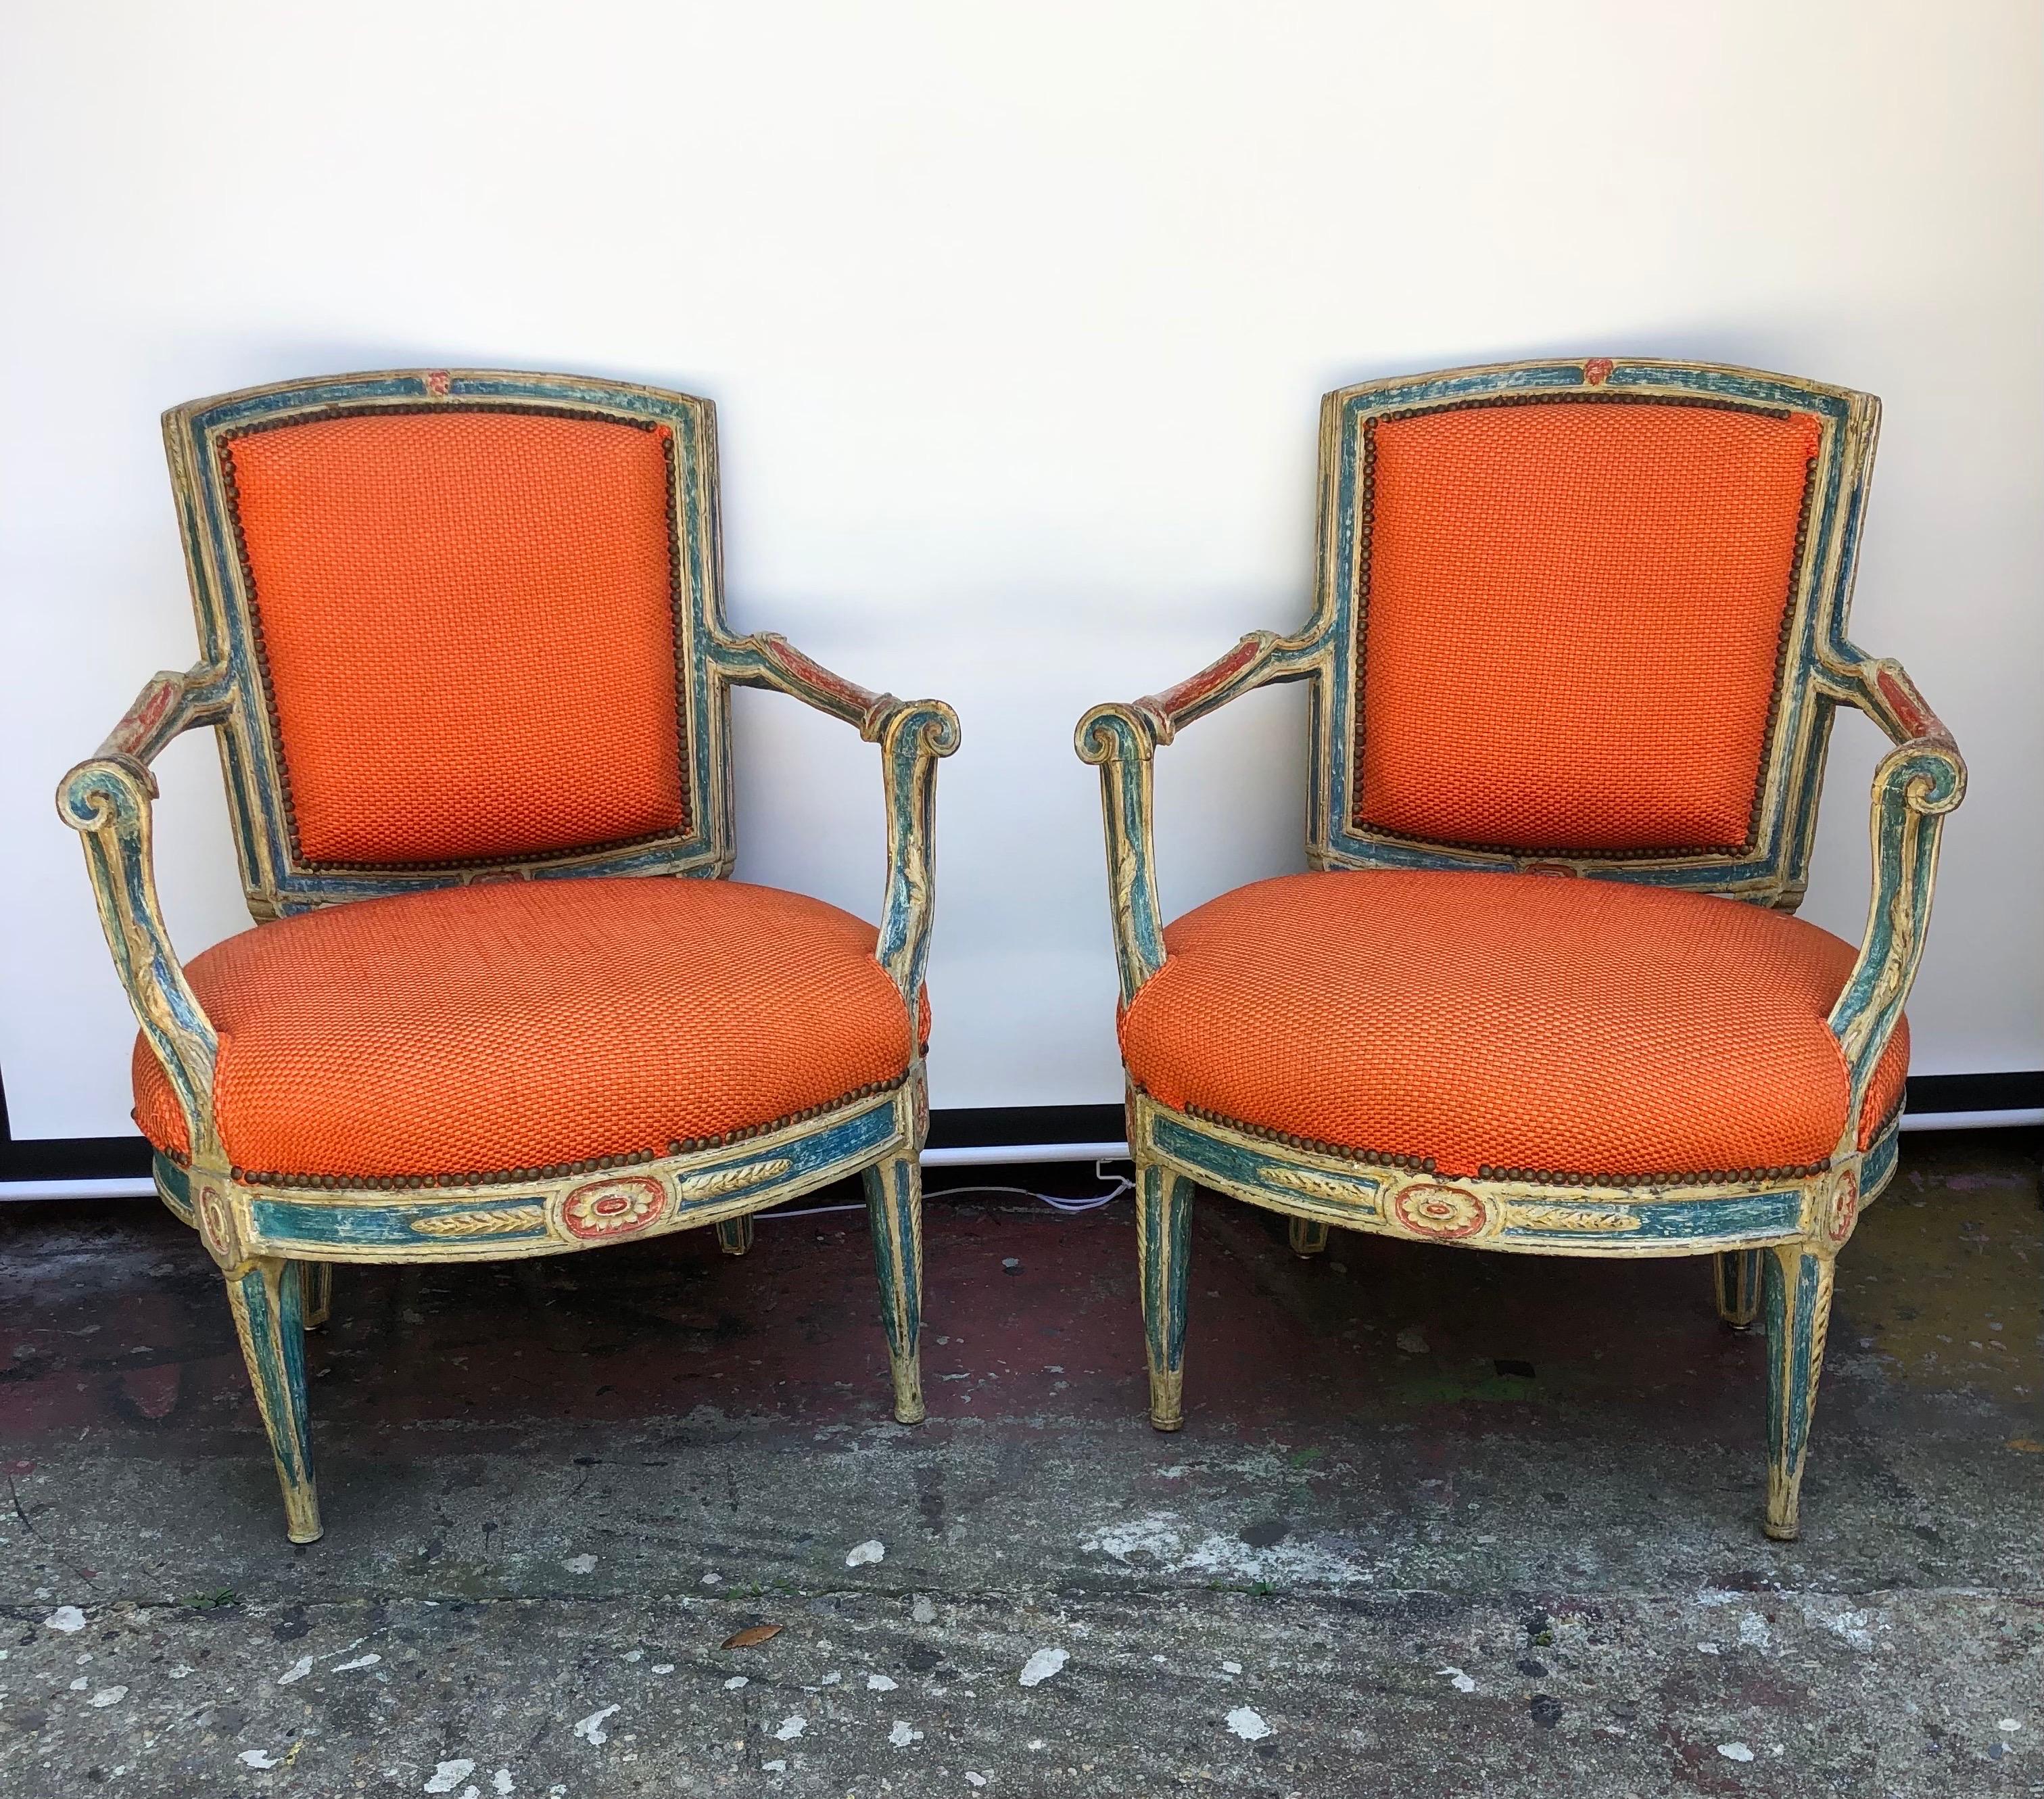 Grand Pair of 18th Century Italian Neoclassical Paint Decorated Armchairs. Diese anmutig gestalteten Stühle werden von zwei sich verjüngenden, quadratischen Hinterbeinen und zwei geschnitzten Rosetten über zwei sich verjüngenden, ovalen Vorderbeinen